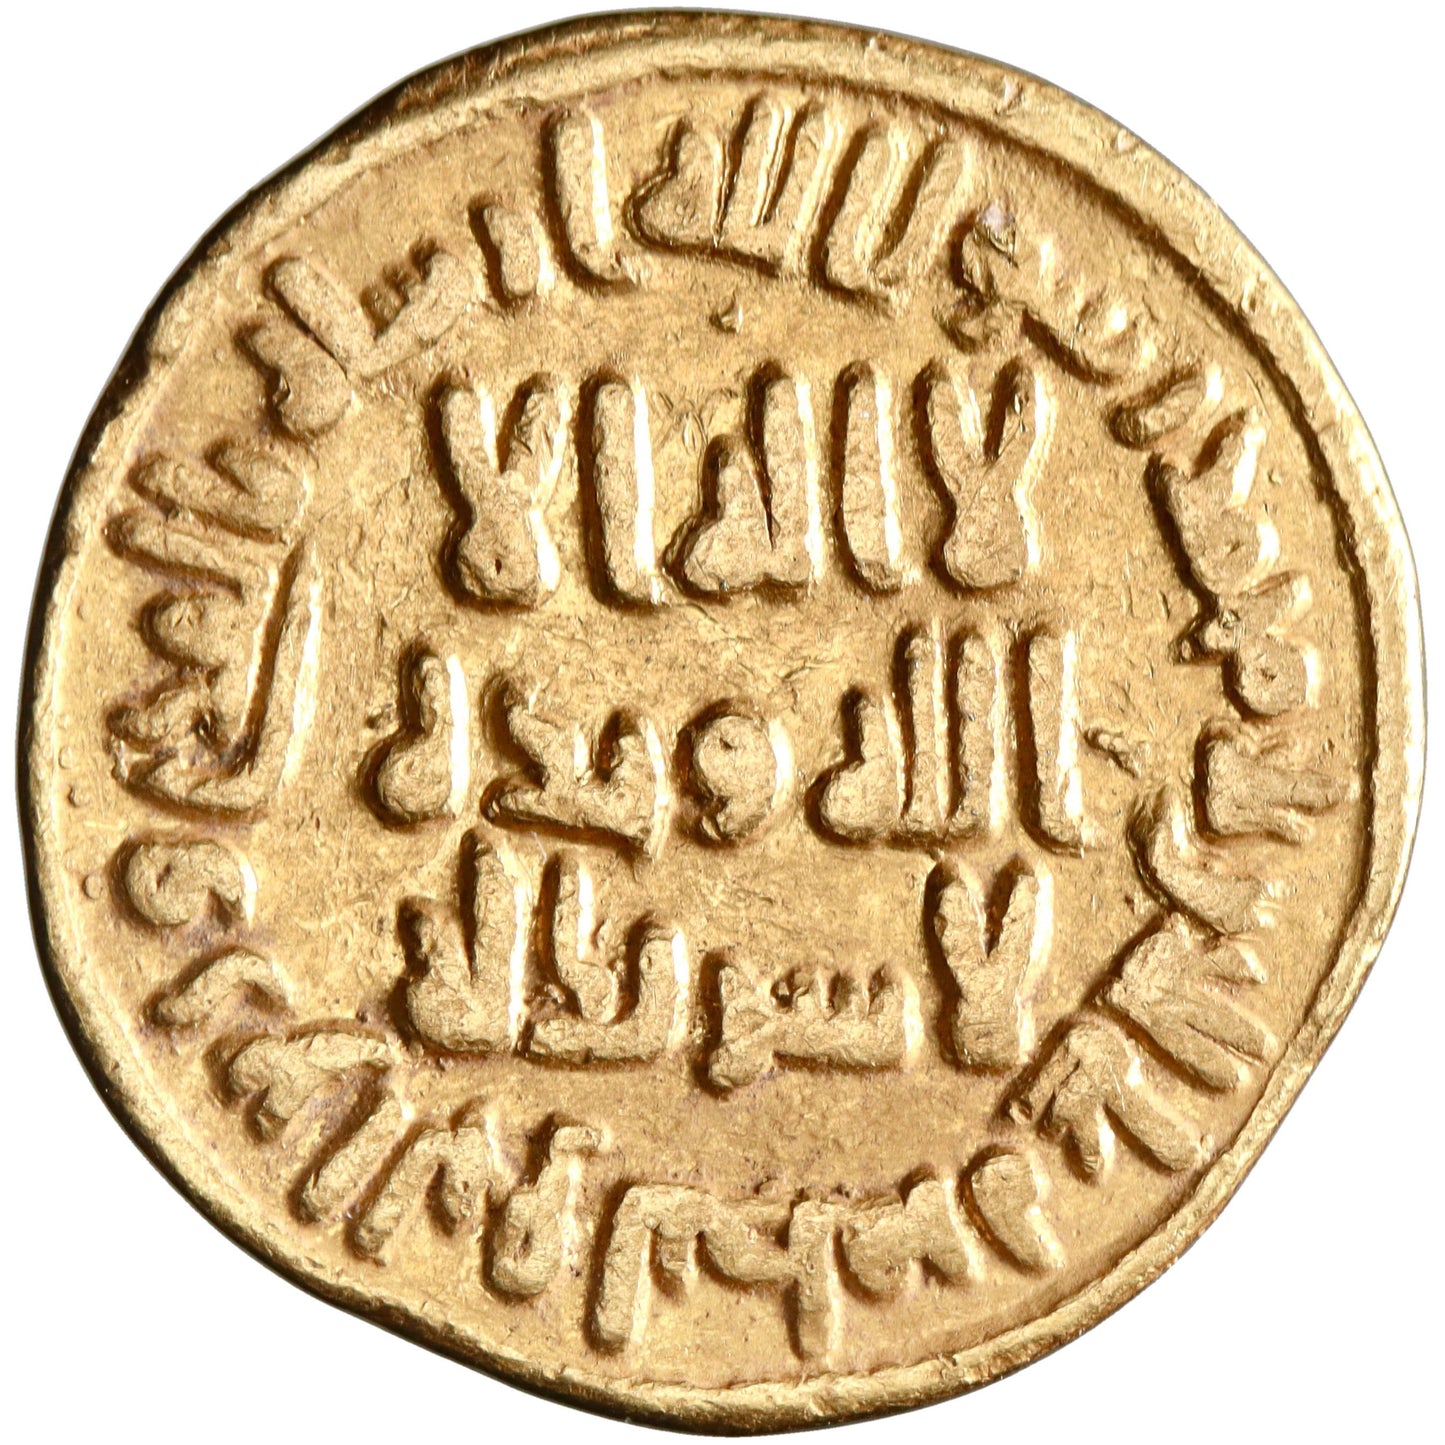 Umayyad, 'Abd al-Malik ibn Marwan, gold dinar, AH 79